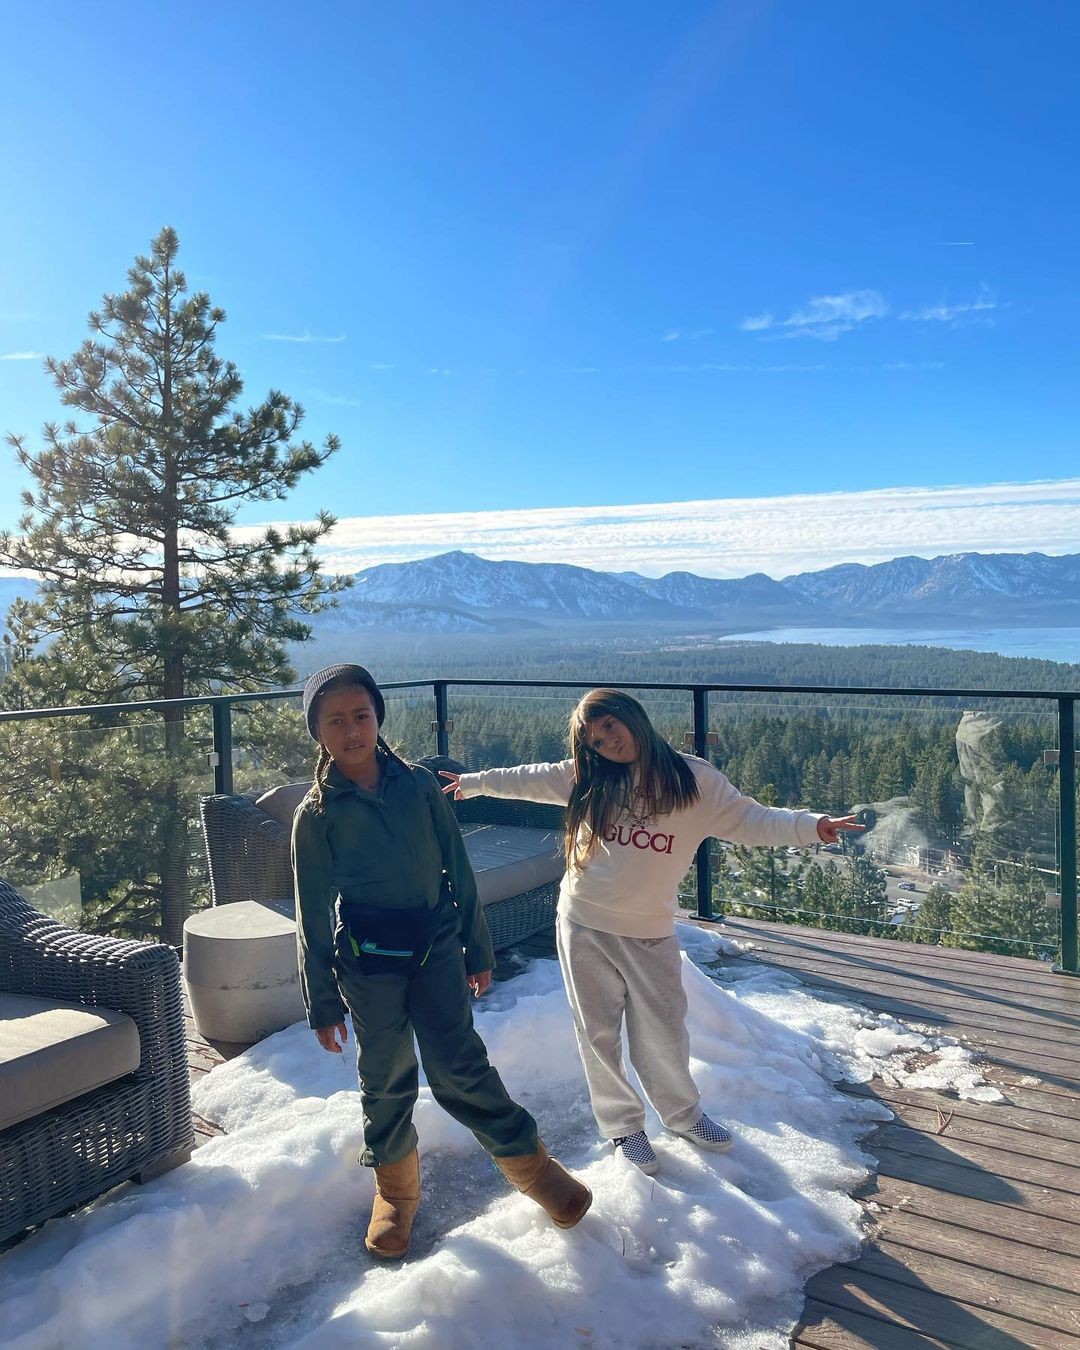 North West e Penelope brincam na neve (Foto: Reprodução Instagram)